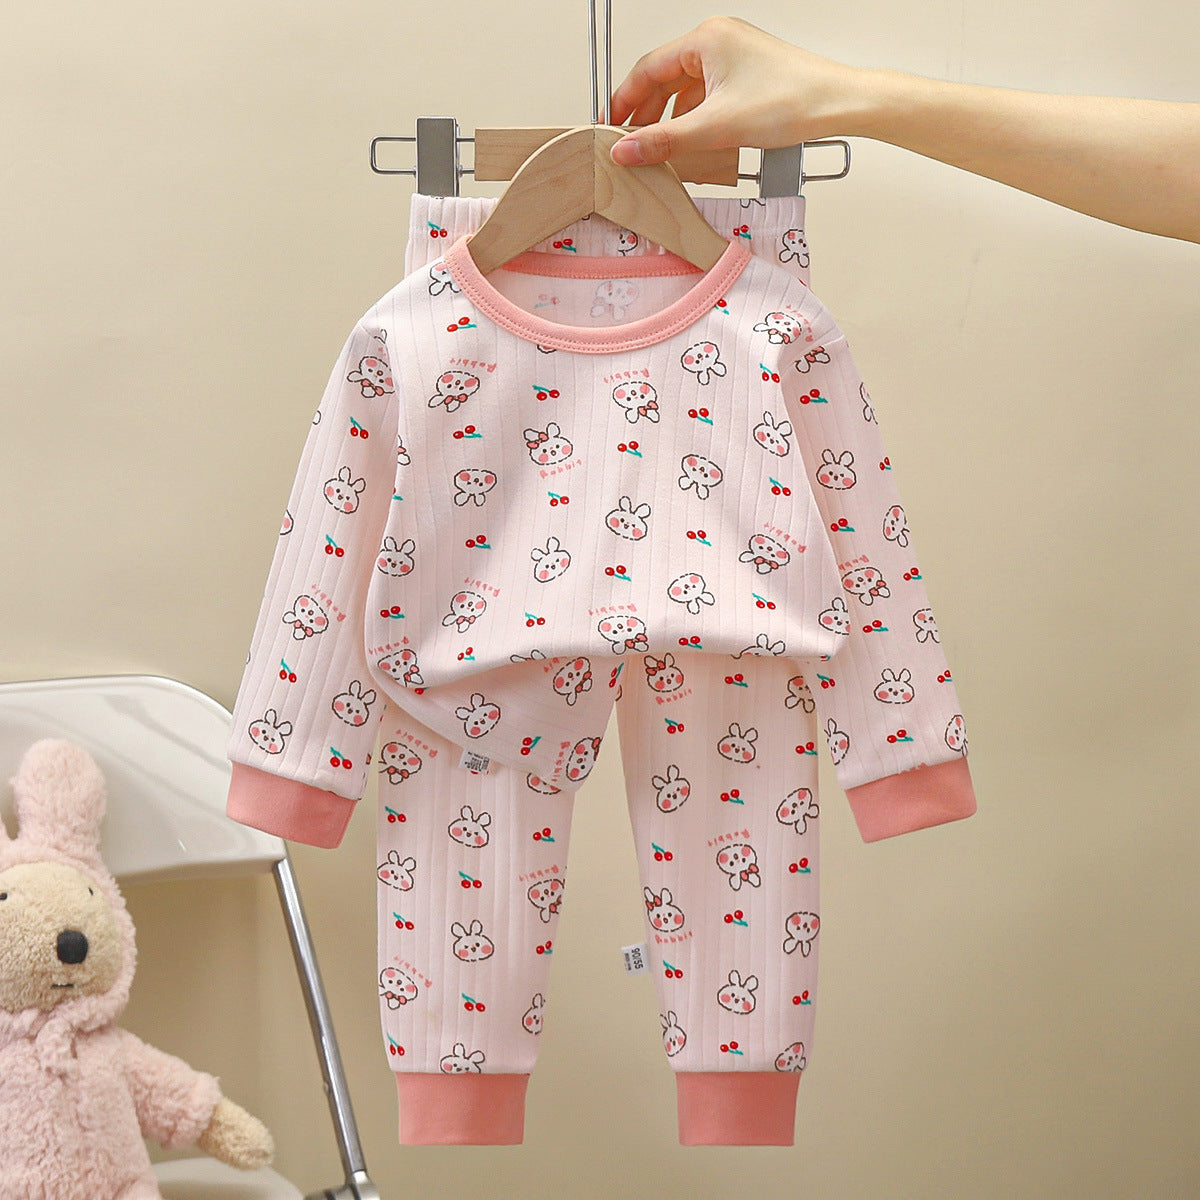 [351354] - Baju Tidur Setelan Piyama Import Anak Cewek - Motif Cherry Rabbit